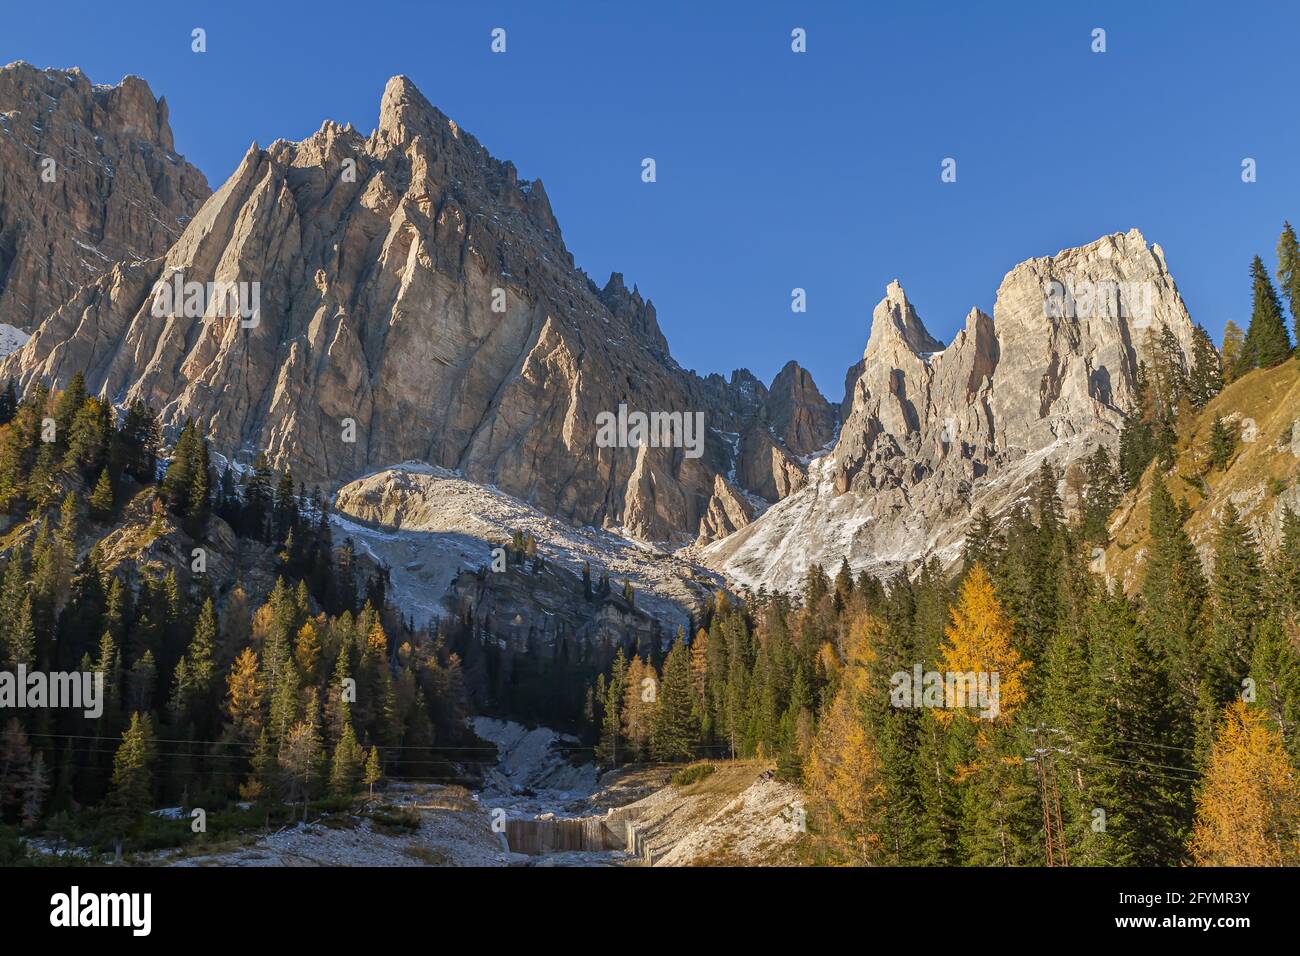 Cortina, Italy - October 27, 2014: Italian national park of Ampezzo Dolomites. Stock Photo